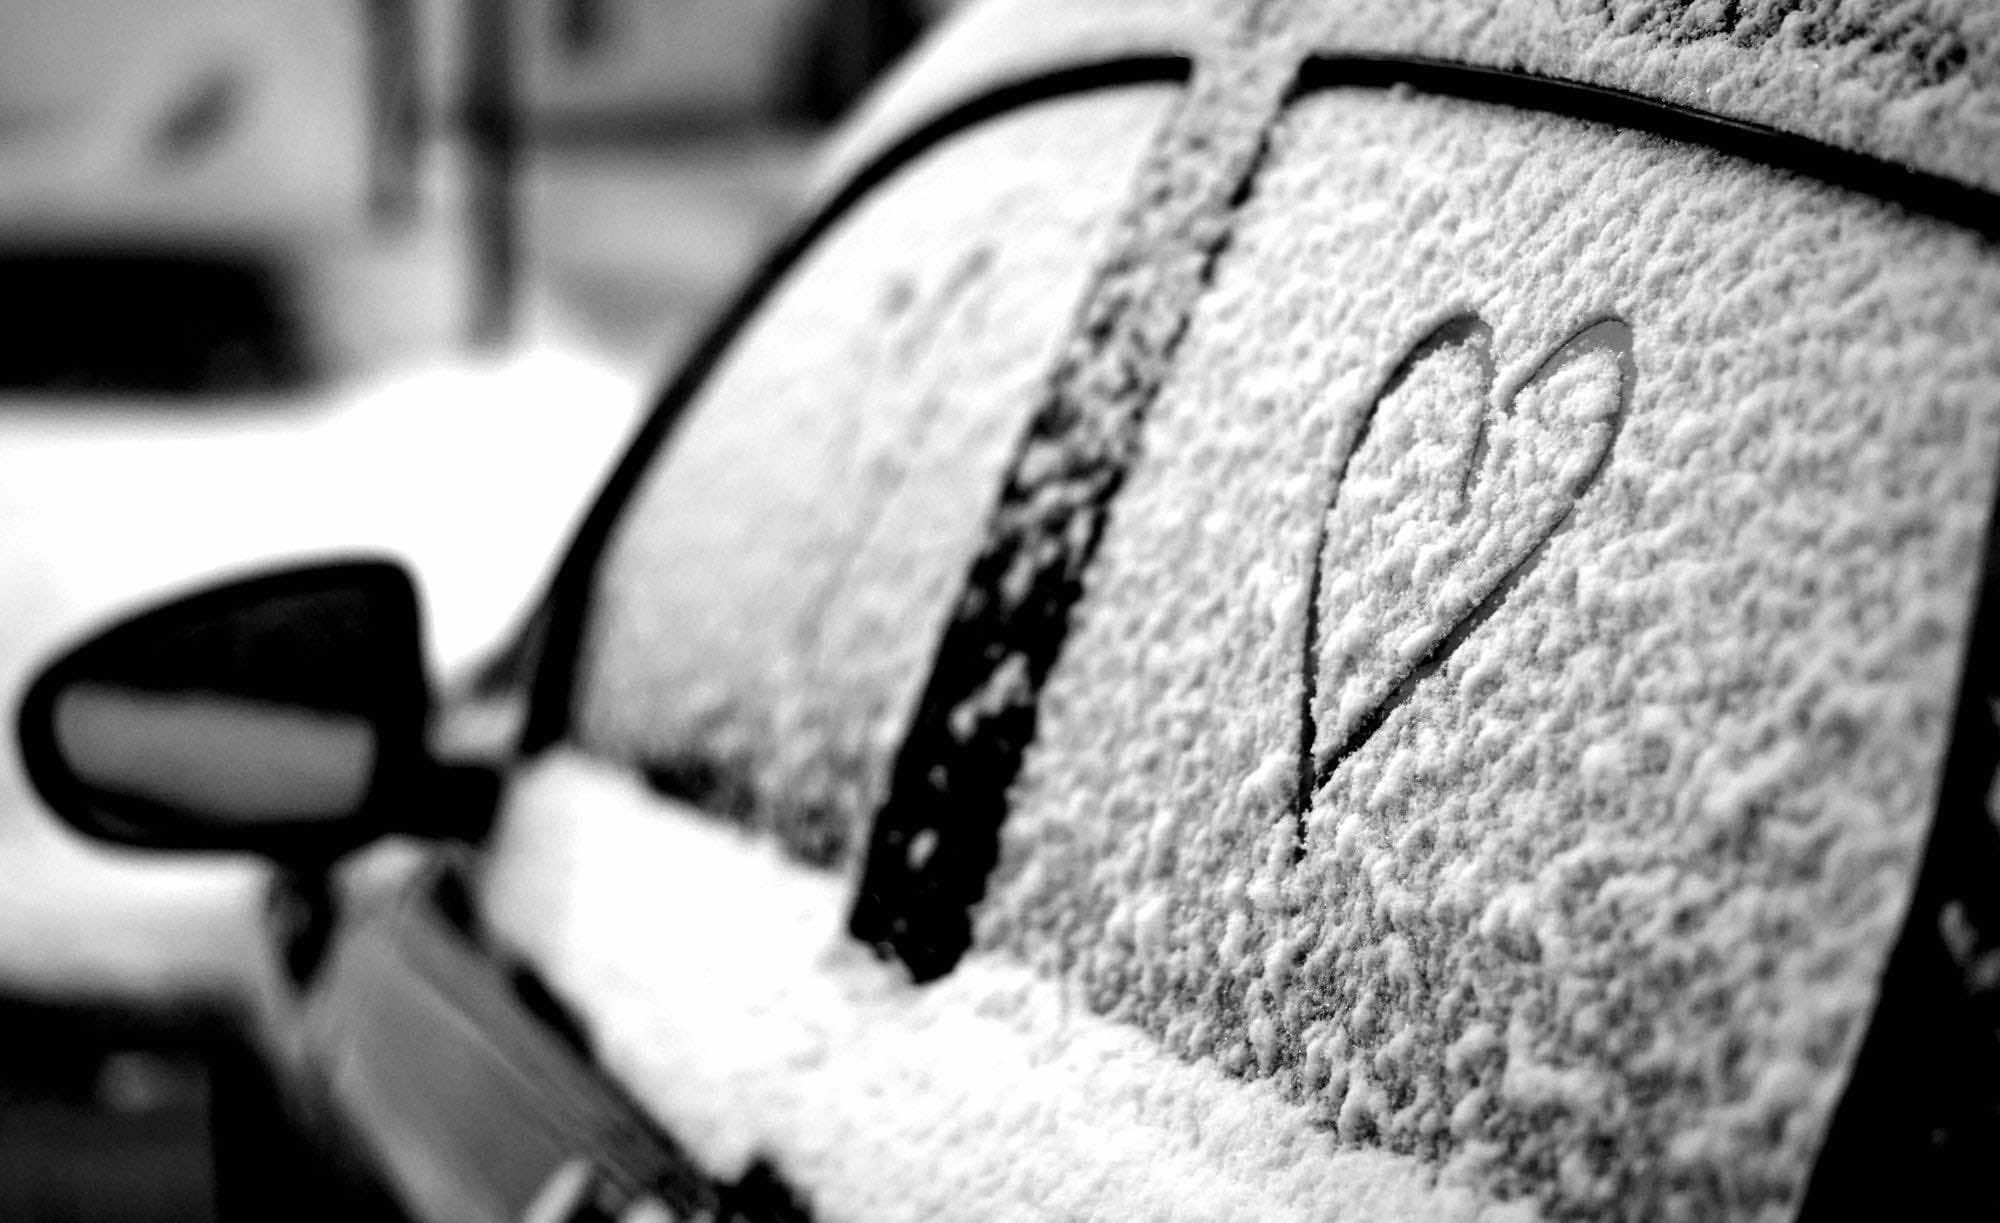 καρδιά σχηματισμένη στο χιόνι σε παράθυρο αυτοκινήτου